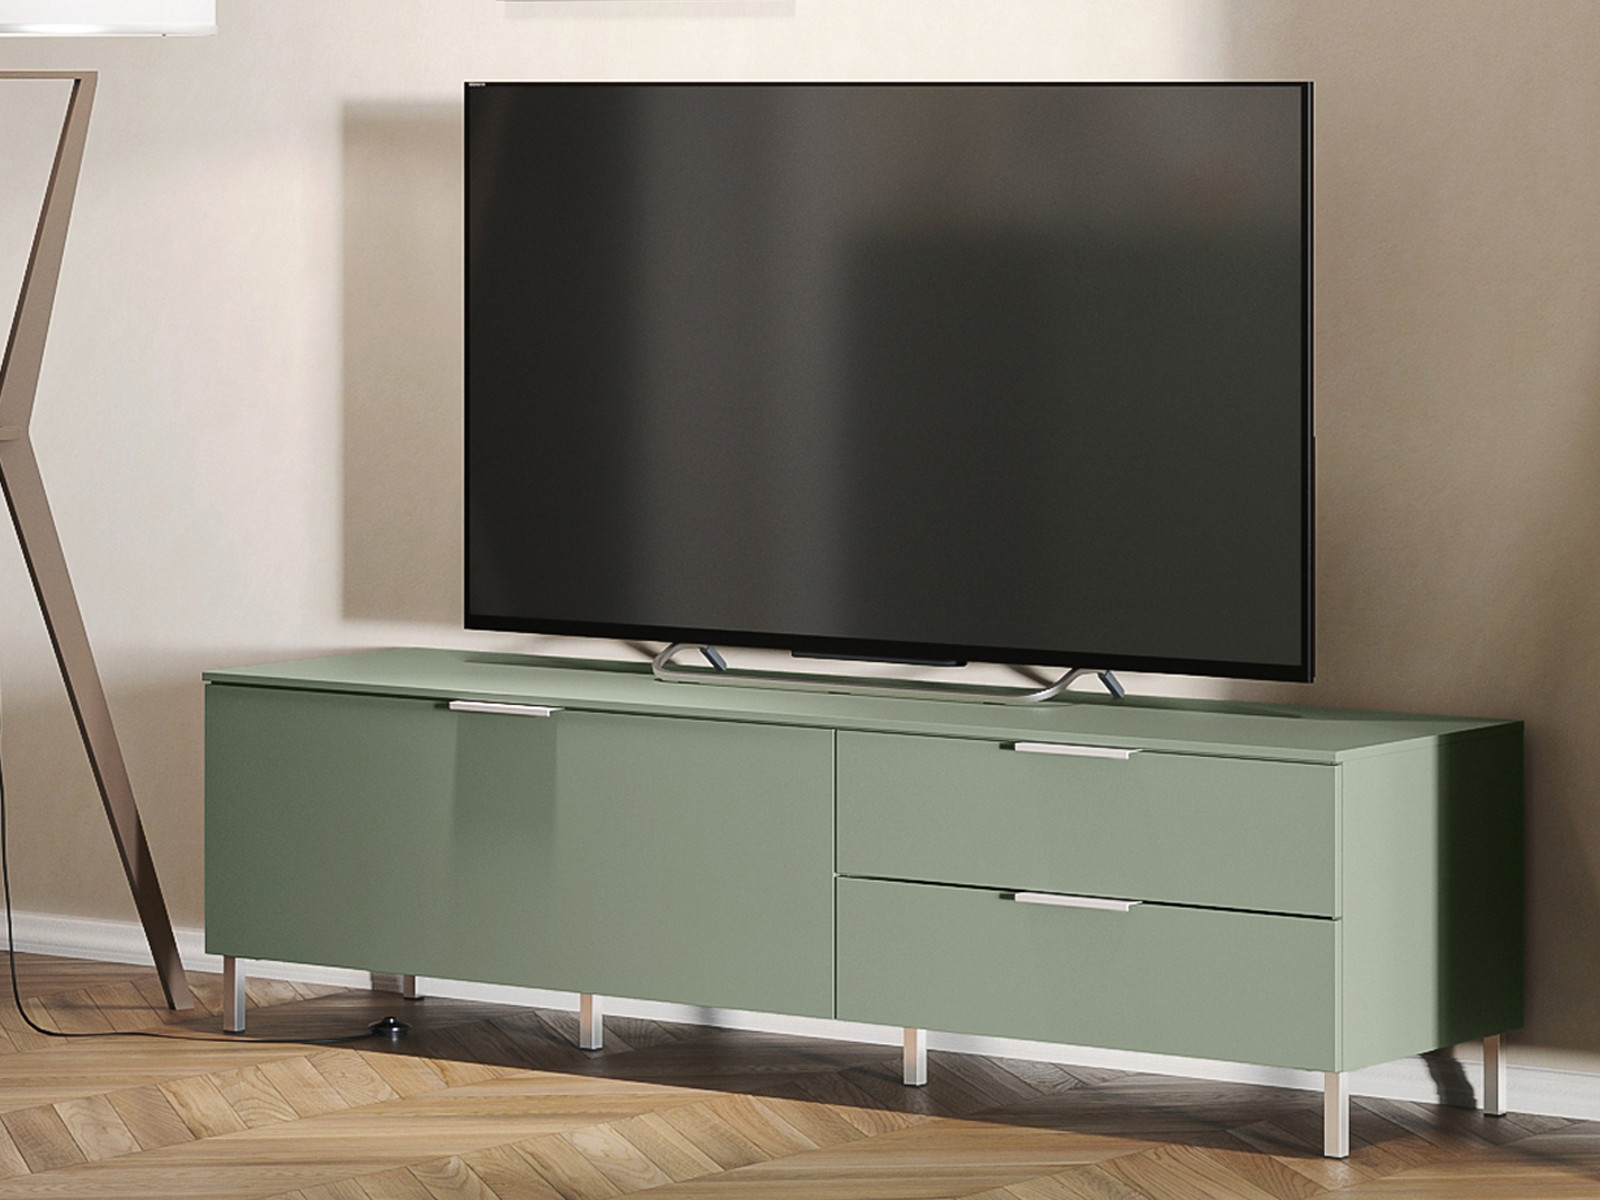 Tv-meubel KENOBI 1 deur 2 lades taupe groen